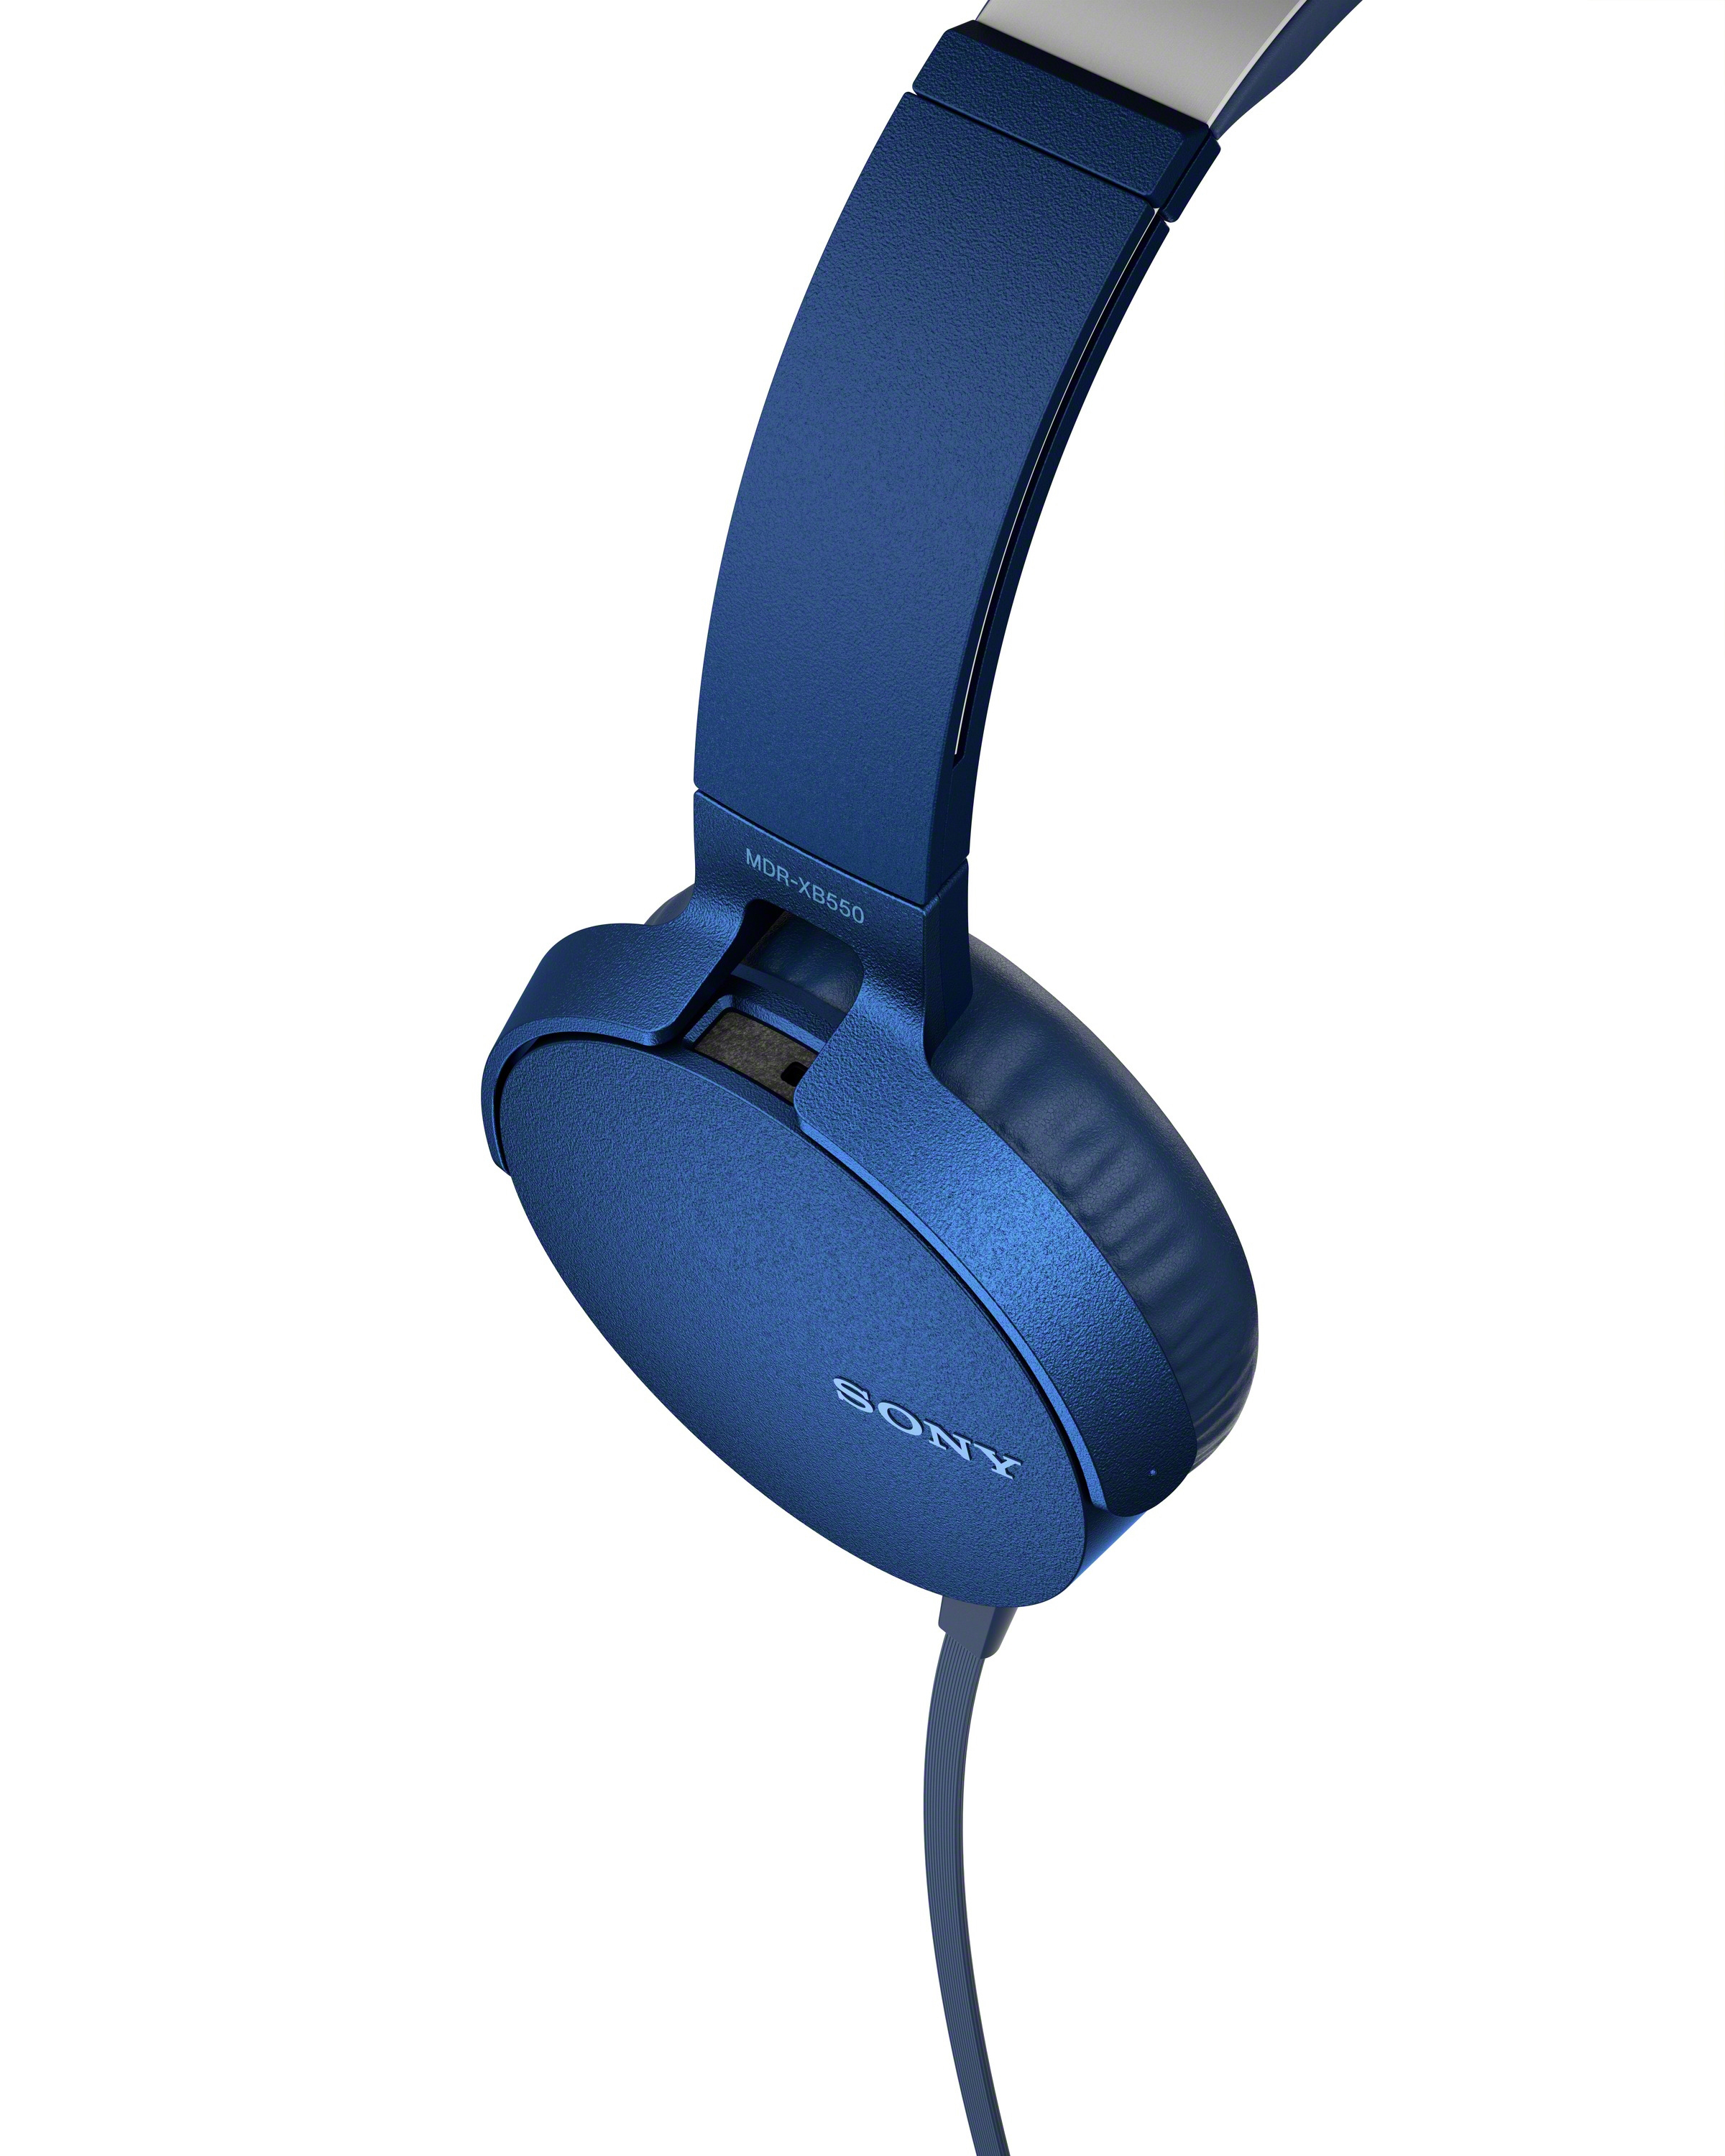 SONY MDR-XB550AP, On-ear Blau Kopfhörer